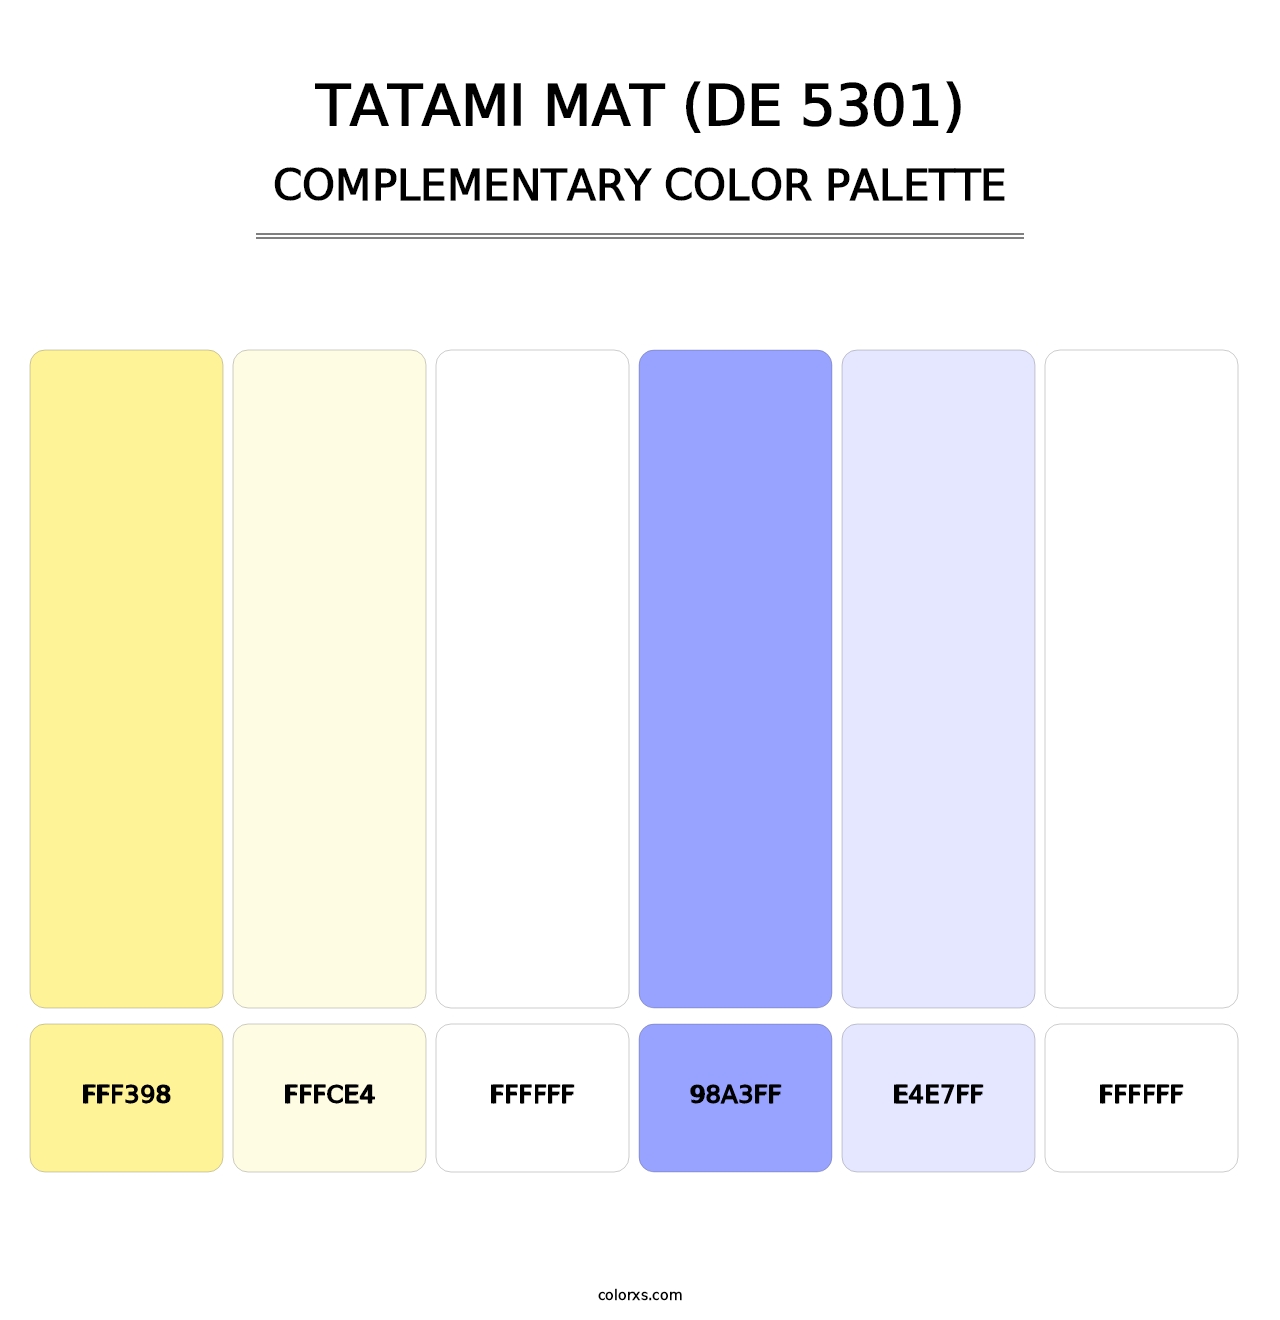 Tatami Mat (DE 5301) - Complementary Color Palette